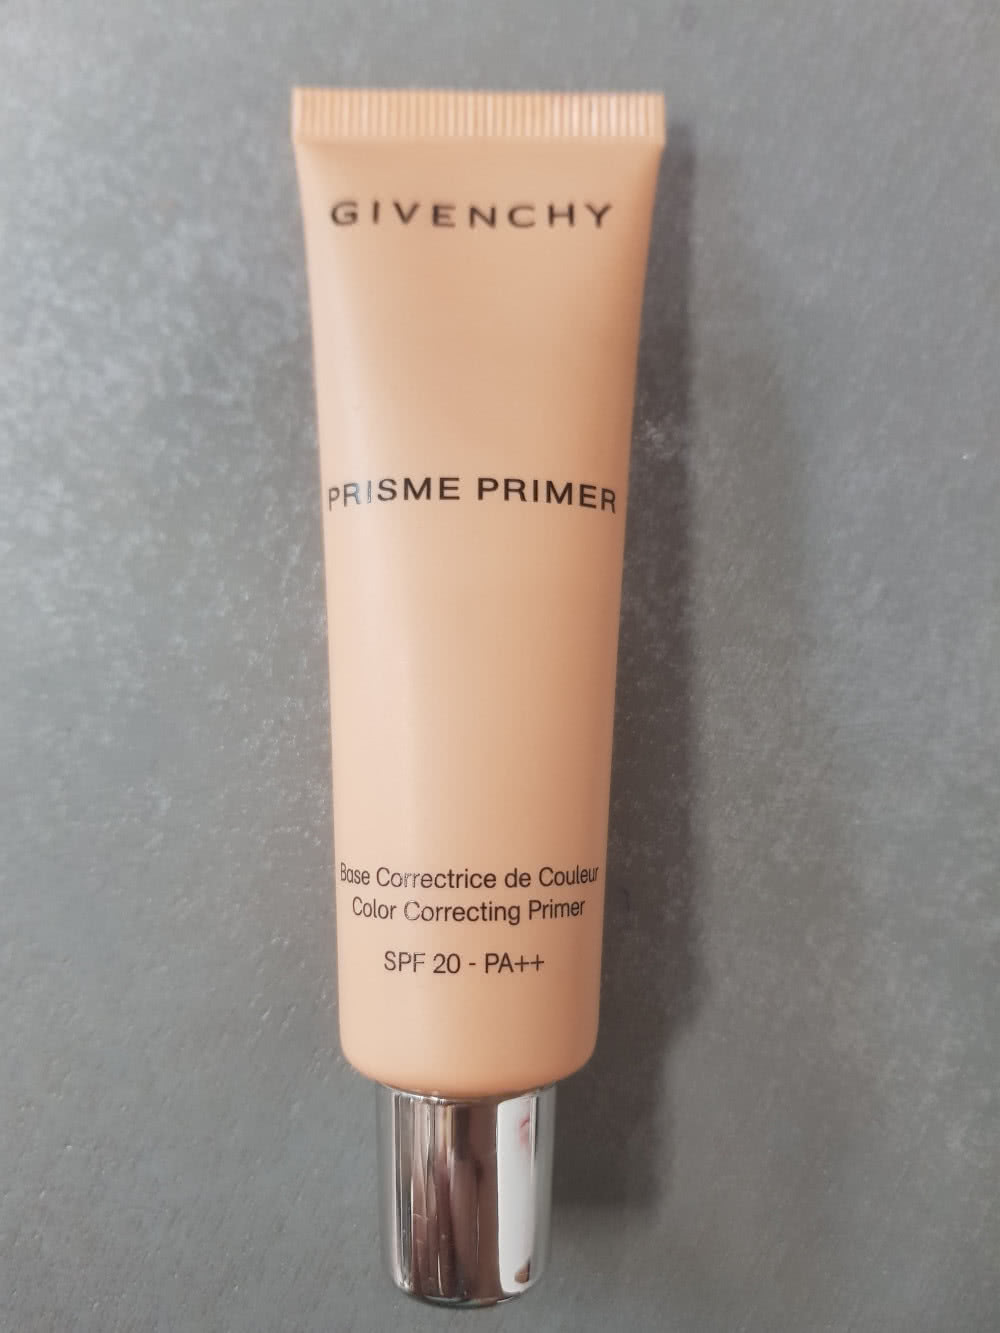 Праймер Givenchy Prisme primer